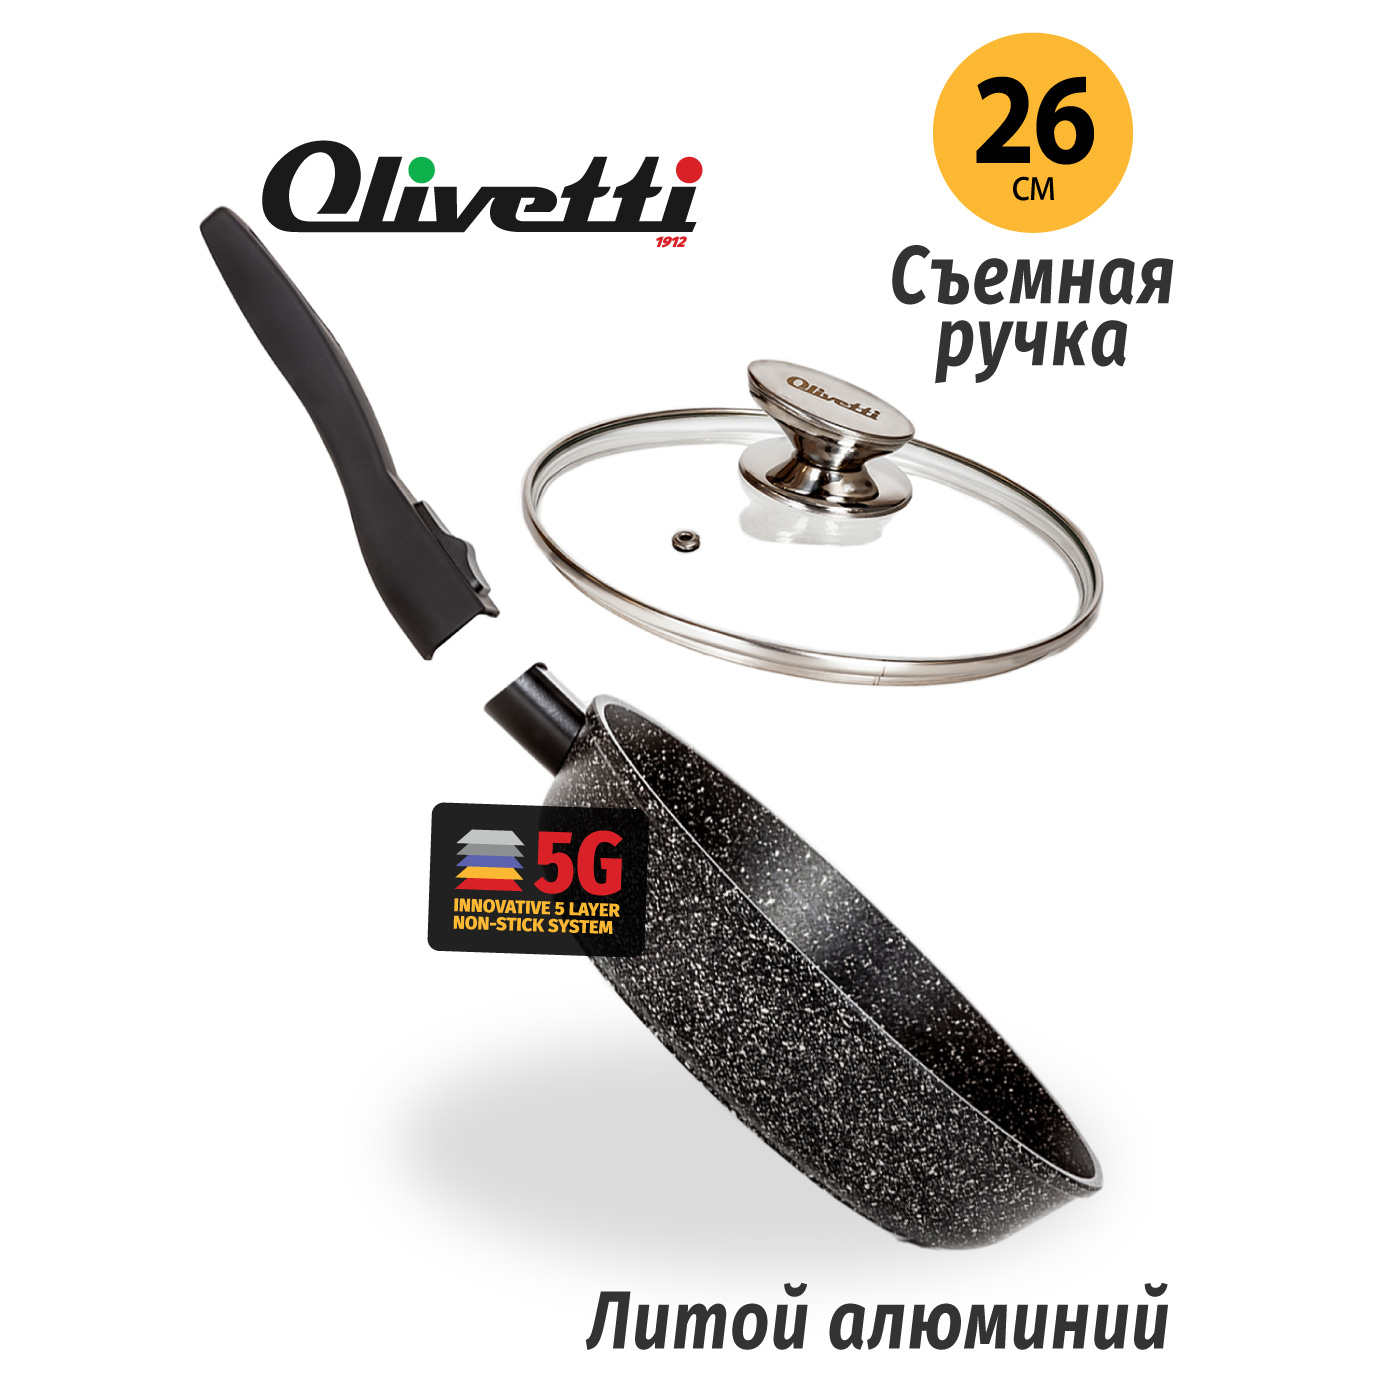 Картинка Сковорода со съемной ручкой Olivetti FP724LD (24 см) по разумной цене купить в интернет магазине mall.su